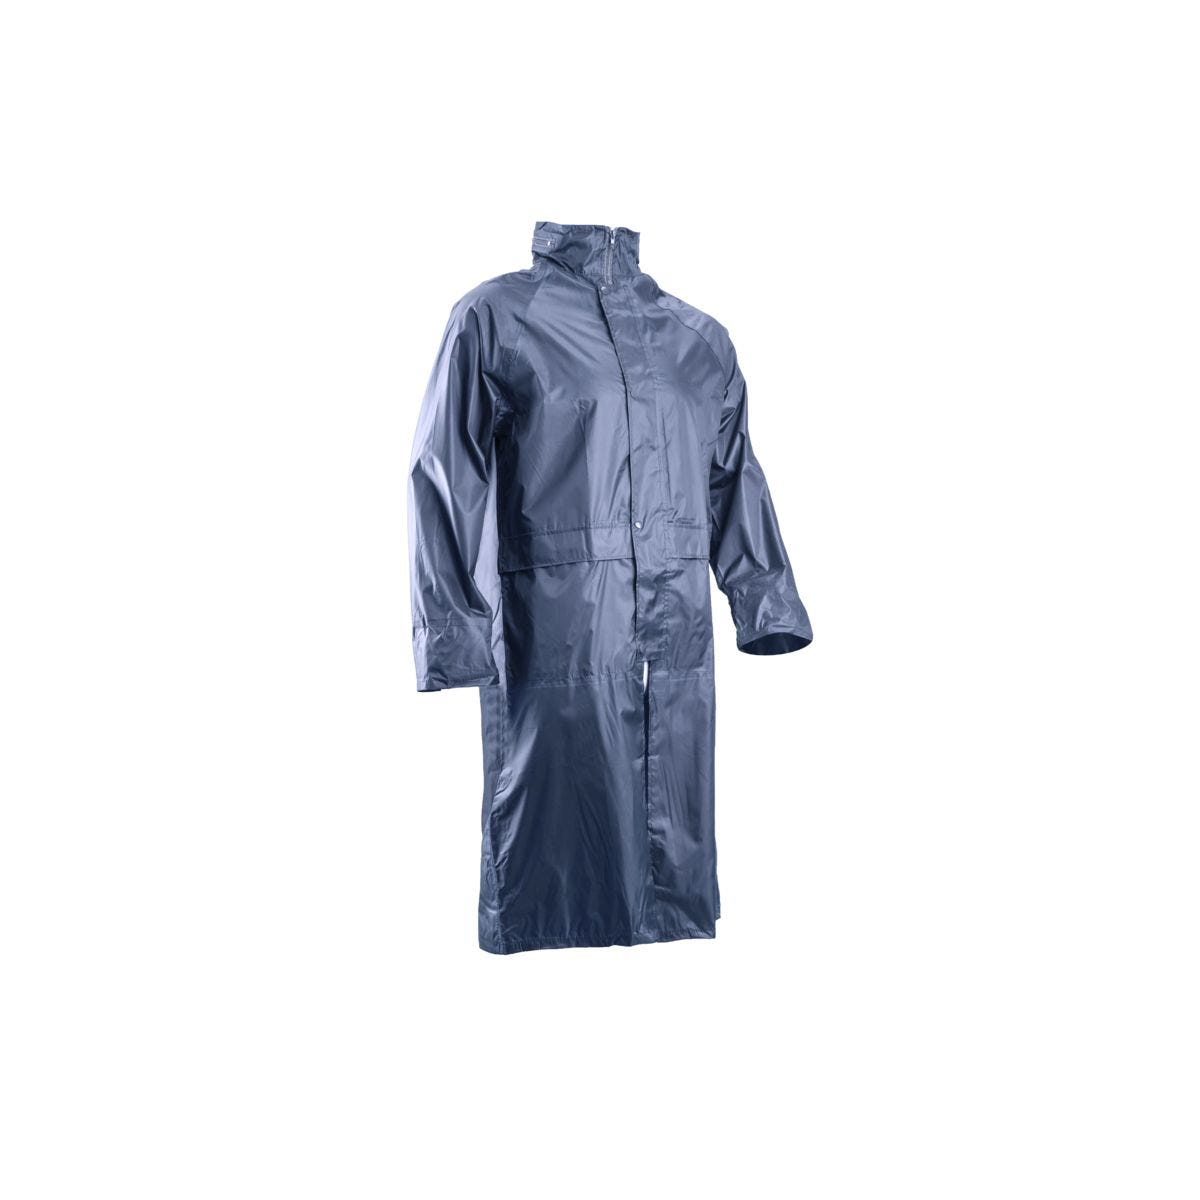 Manteau de pluie PVC, marine, 185g/m² - COVERGUARD - Taille XL 0